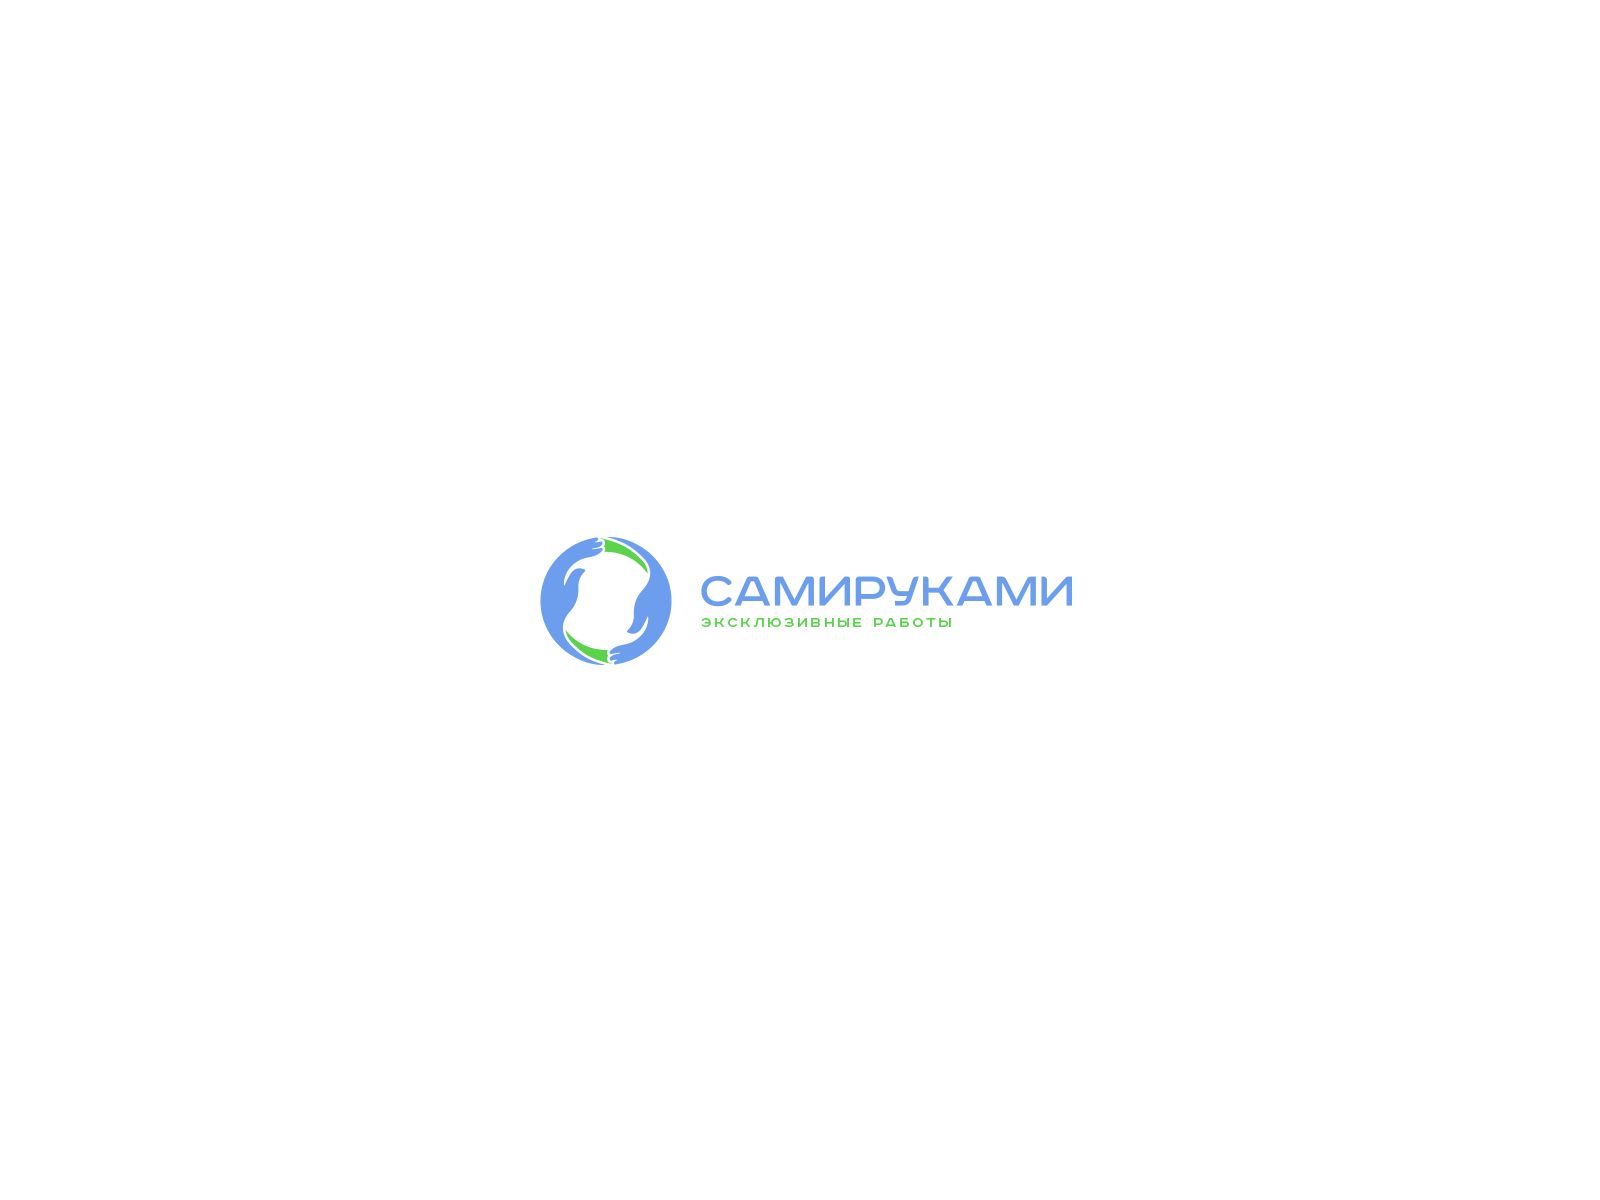 Лого и фирменный стиль для СамиРуками - дизайнер U4po4mak